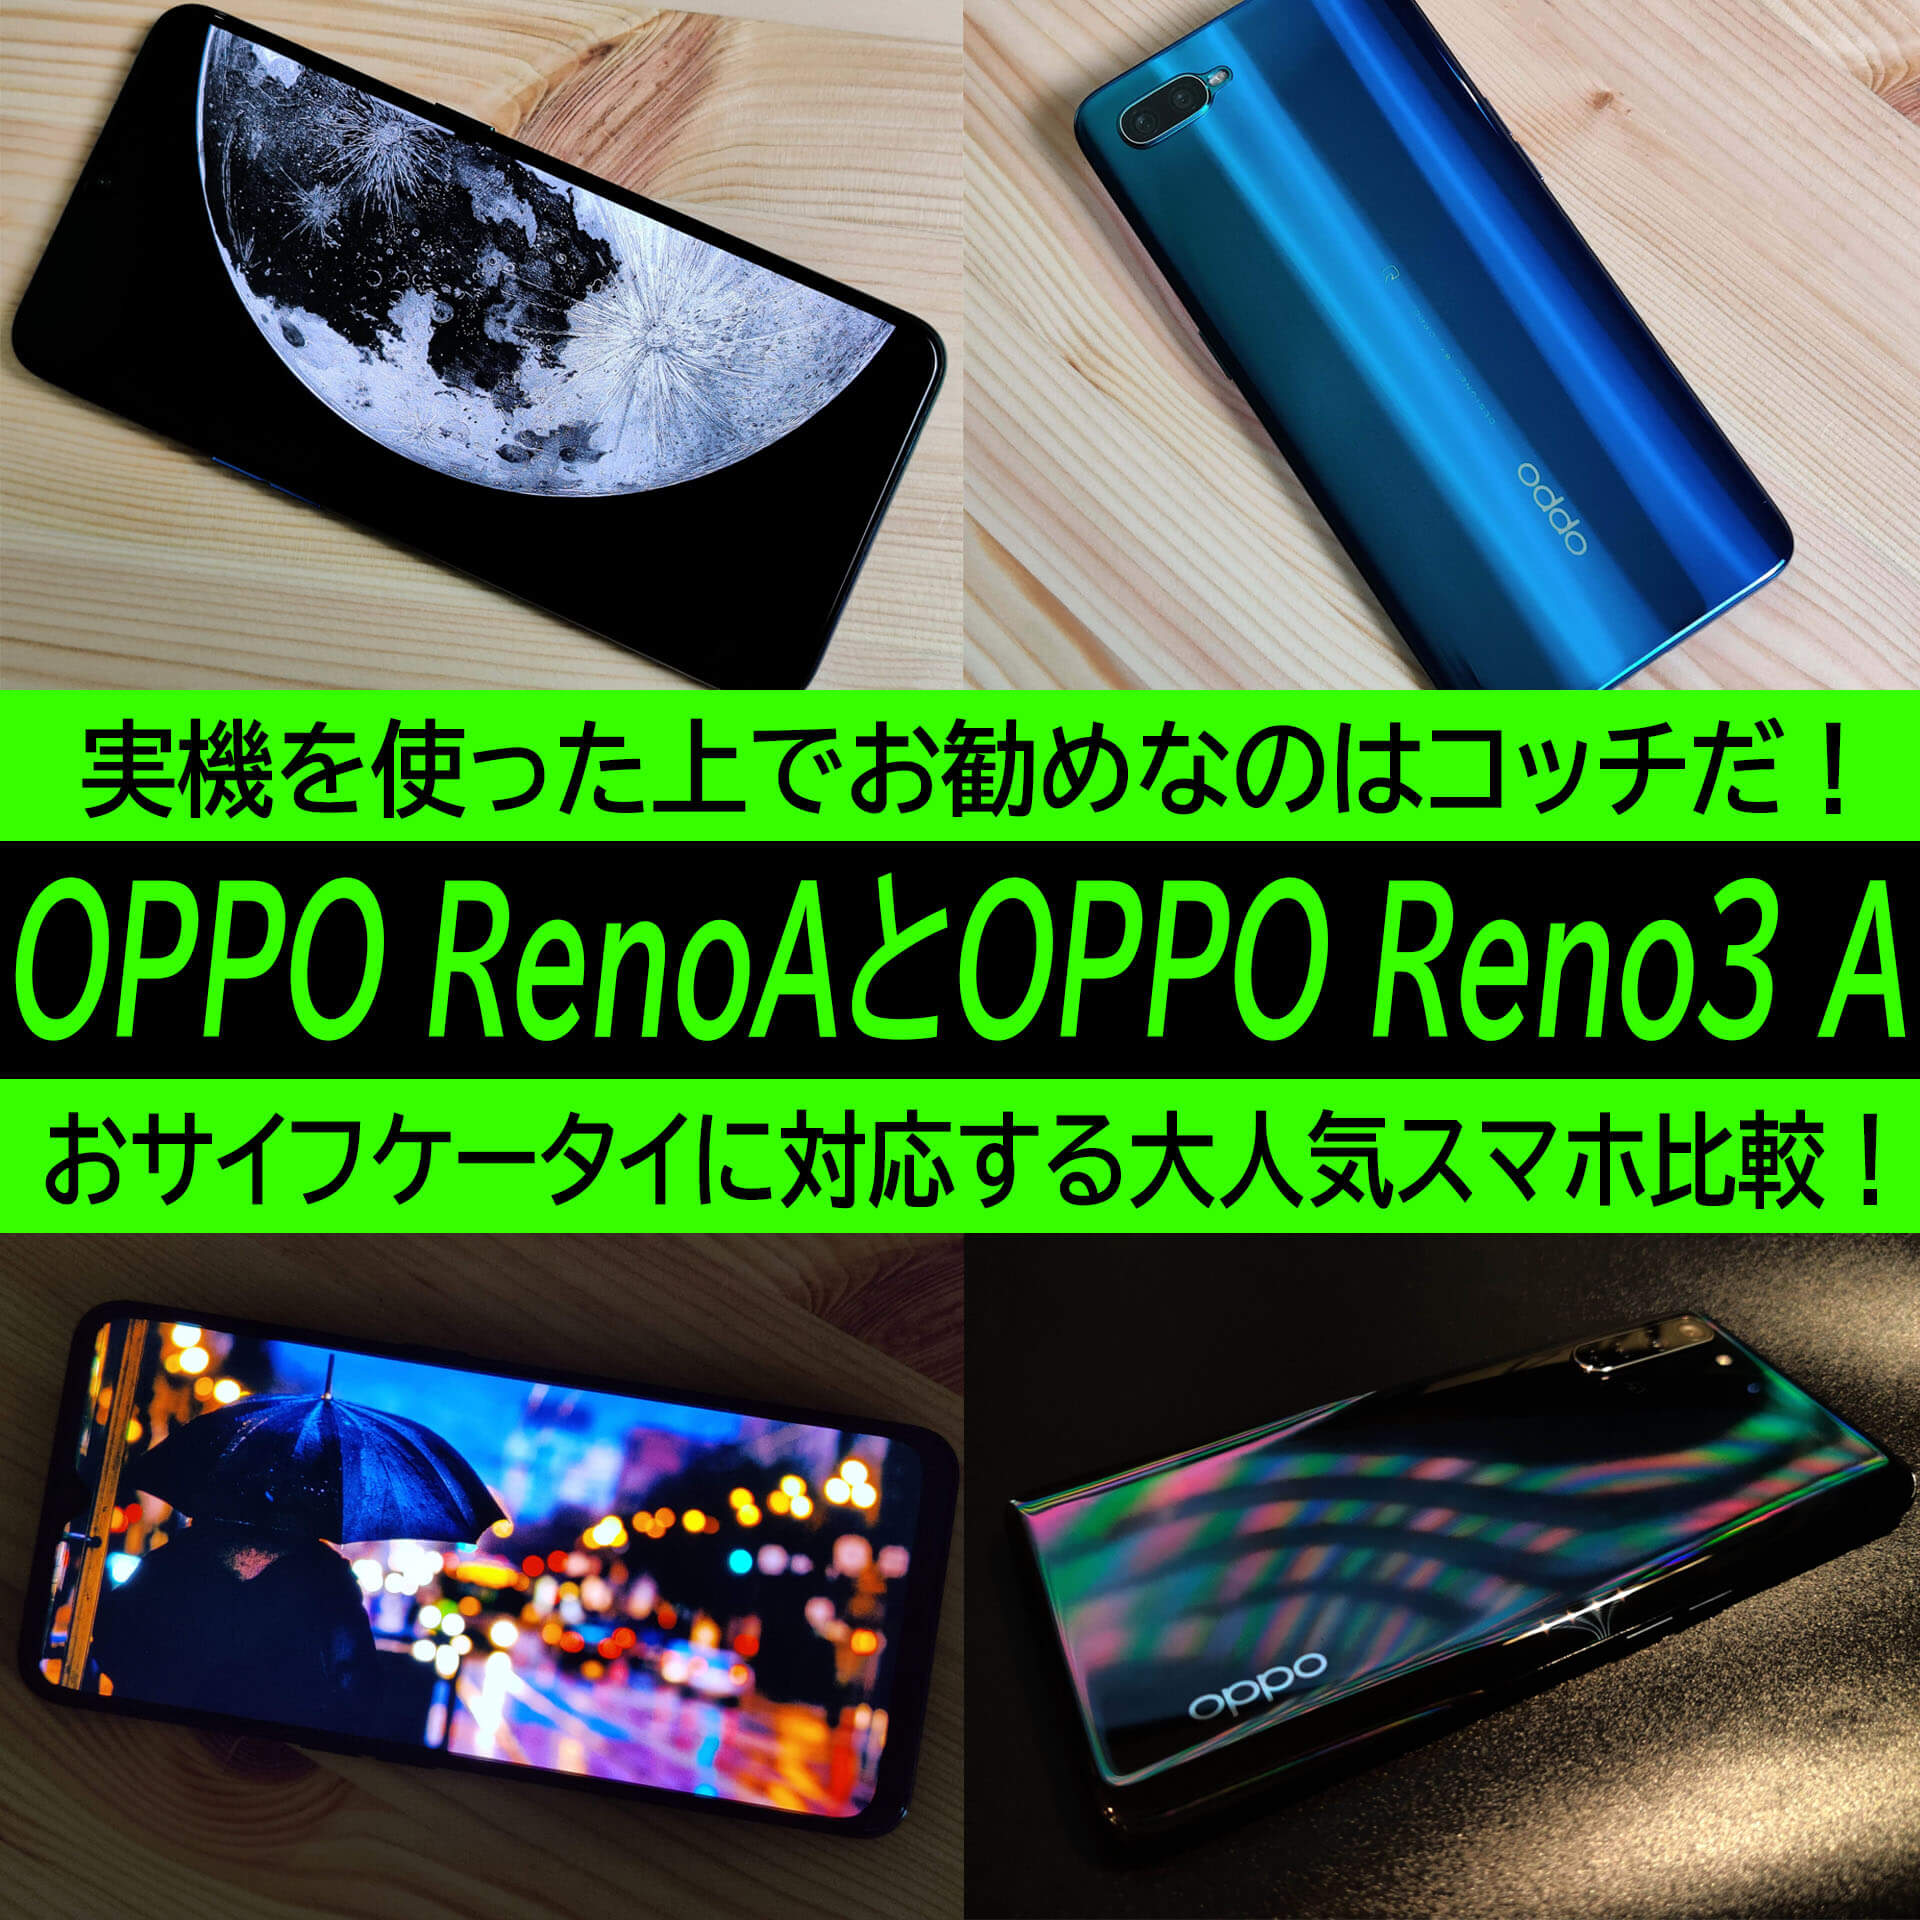 OPPO Reno3 AとOPPO Reno Aをどっちも使ってお勧めしたいのはコレ！お値段以上のOPPOスマホ徹底検証 | ハイパーガジェット通信